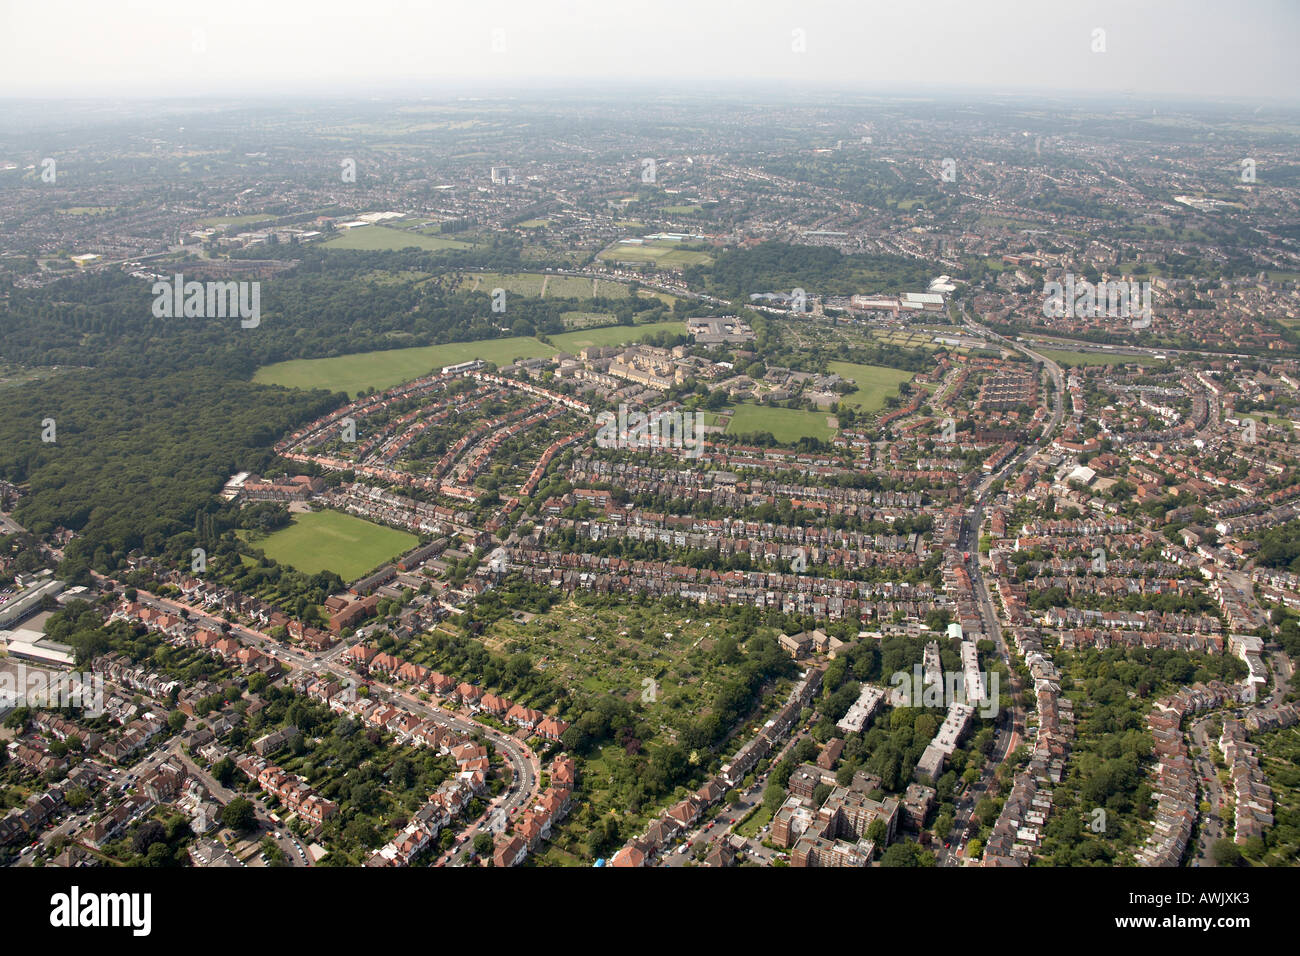 Vue aérienne oblique de haut niveau au nord de St Pancras et cimetière d'Islington Coldfall Muswell Hill Bois Terrain de sport Banque D'Images